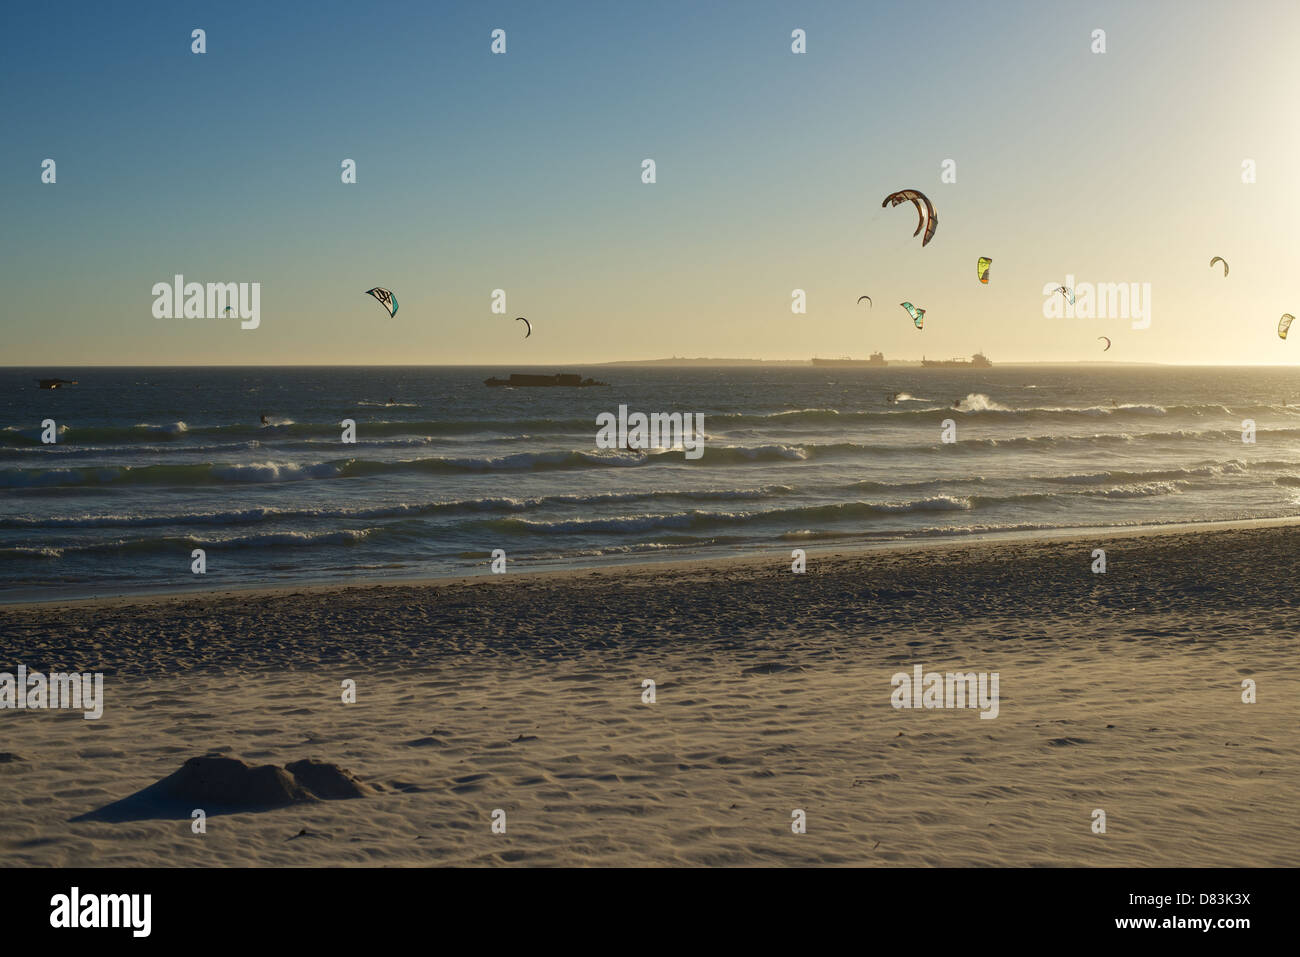 Kite surfeurs au coucher du soleil de Bloubergstrand Cape Town Afrique du Sud Banque D'Images